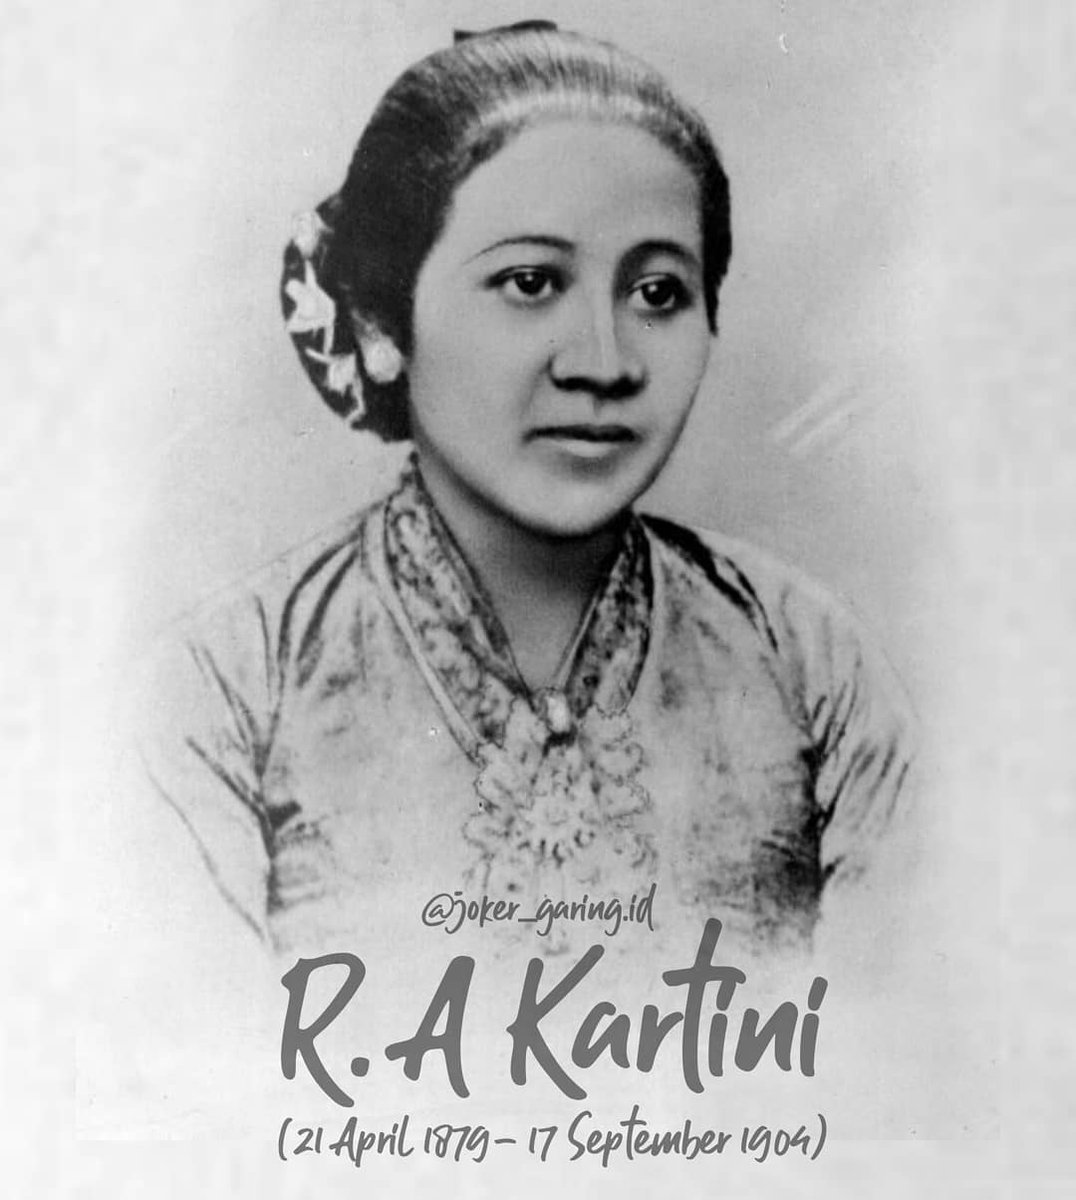 Jangan mengeluhkan hal-hal buruk yang datang dalam hidupmu. Tuhan tak pernah memberikannya. kamulah yang membiarkannya datang. ~ R.A Kartini
#indonesia #pahlawan #kartini #kartiniday #kebayakartini #kartiniday